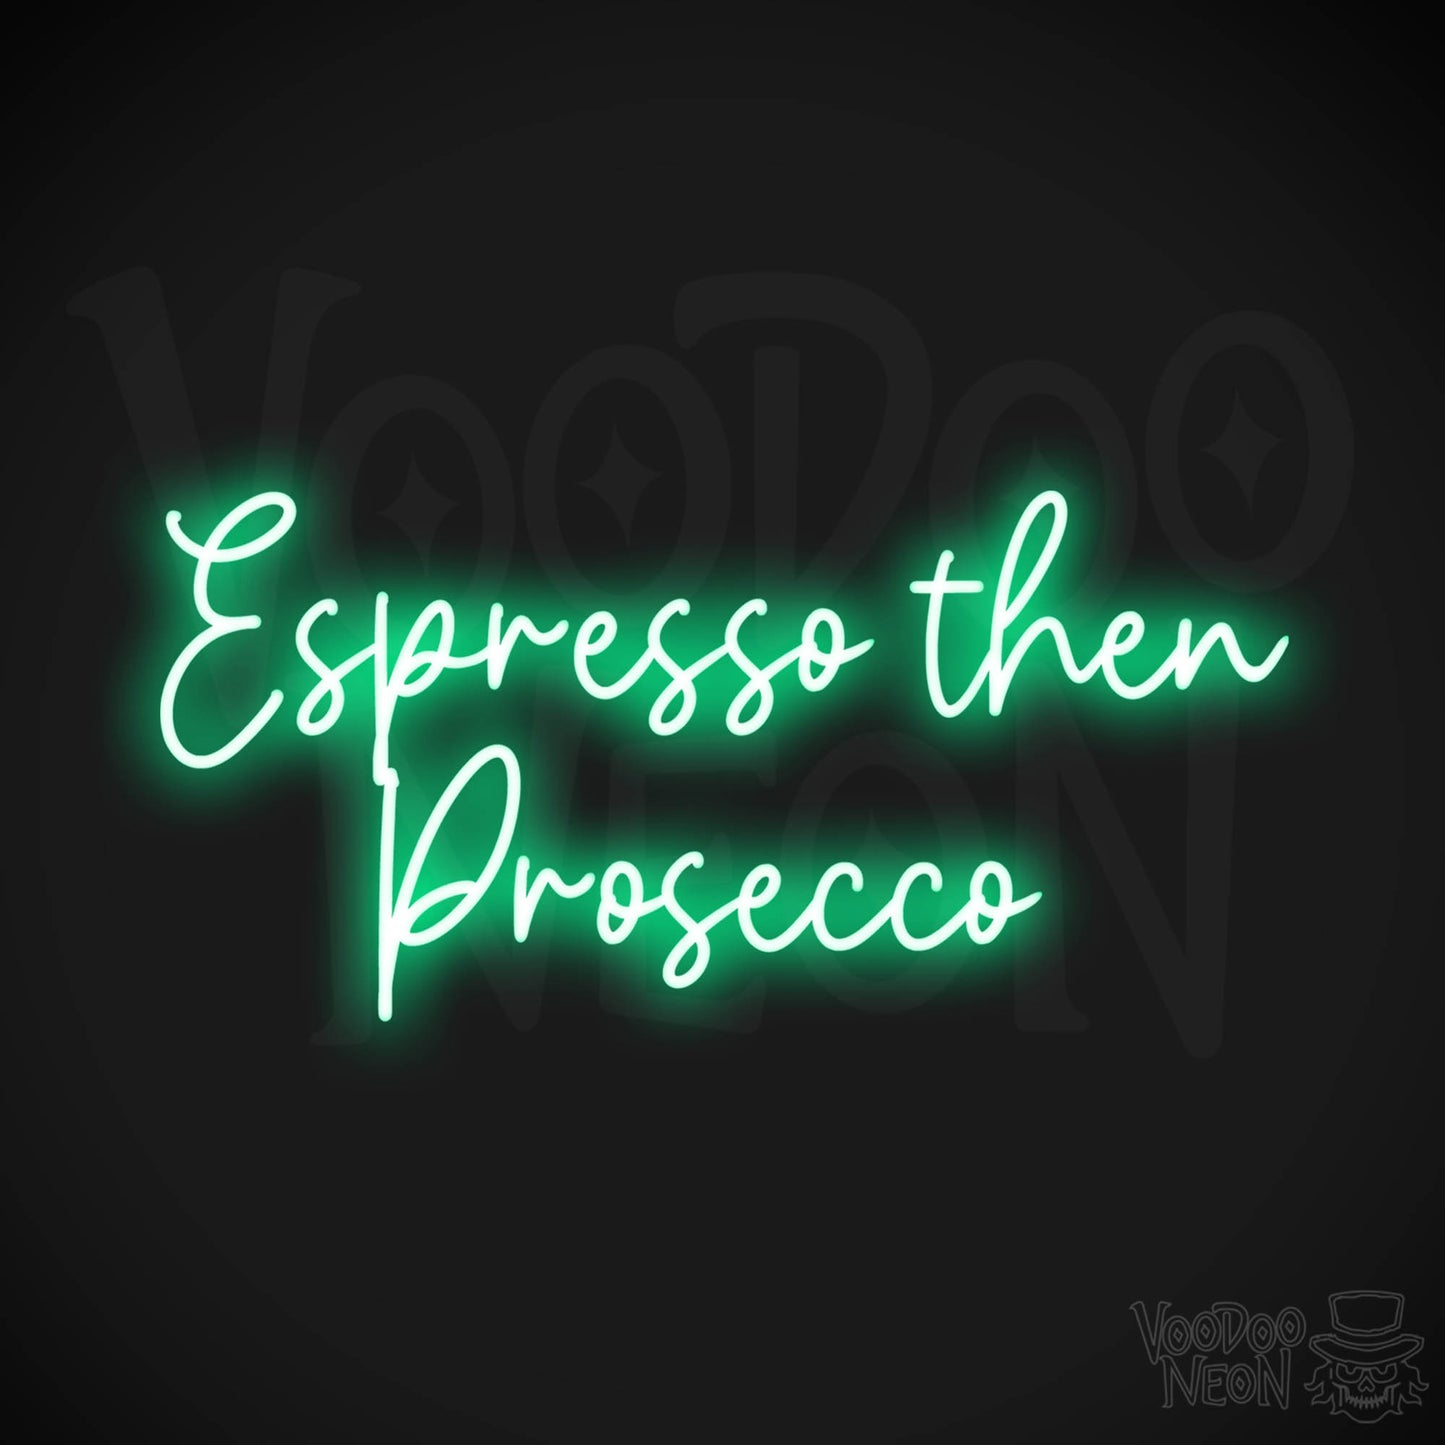 Espresso Then Prosecco LED Neon - Green